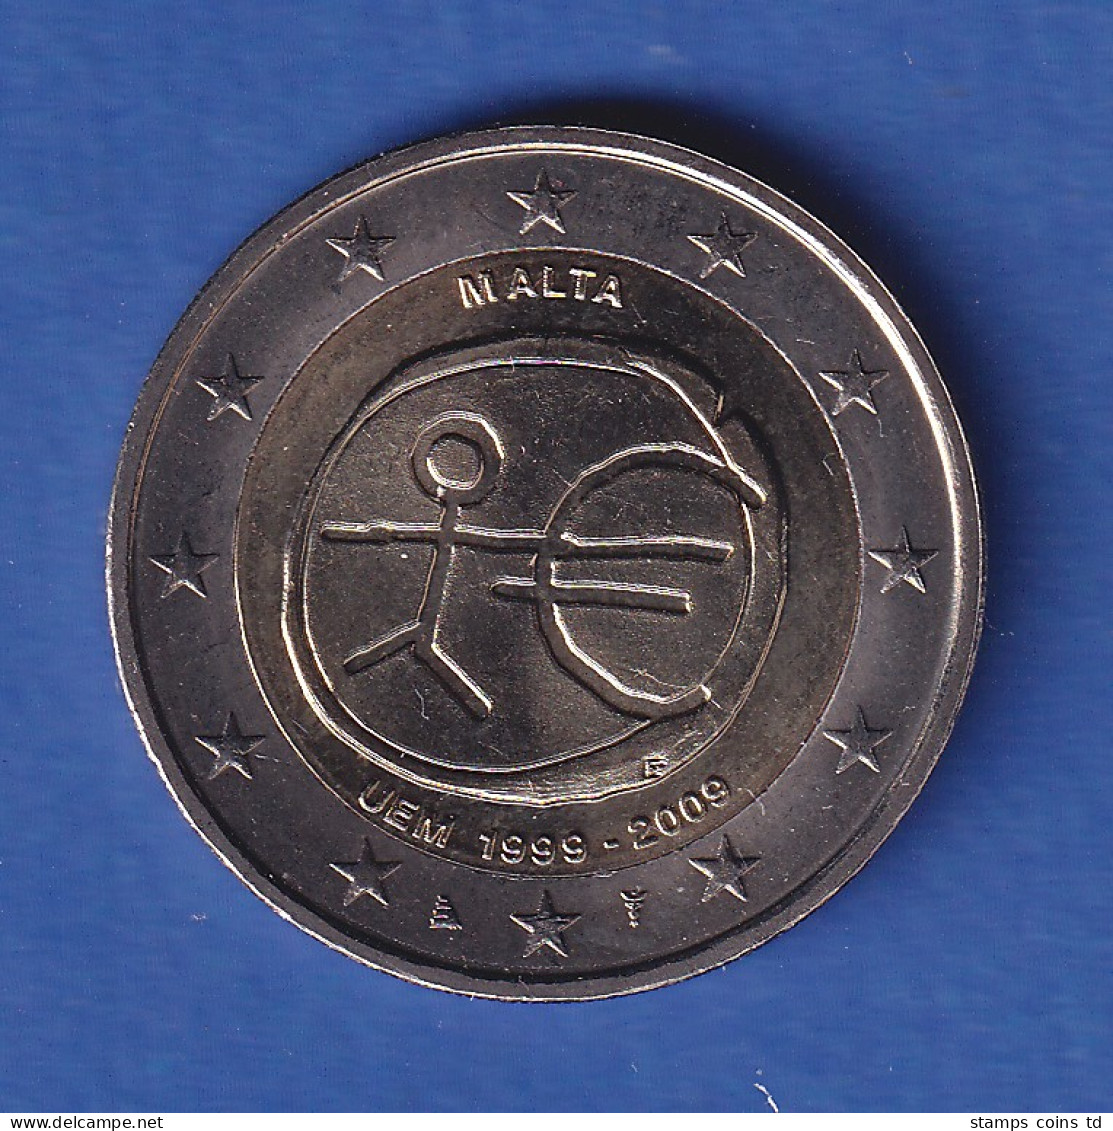 Malta 2009 2-Euro-Sondermünze Währungsunion Bankfr. Unzirk.  - Malte